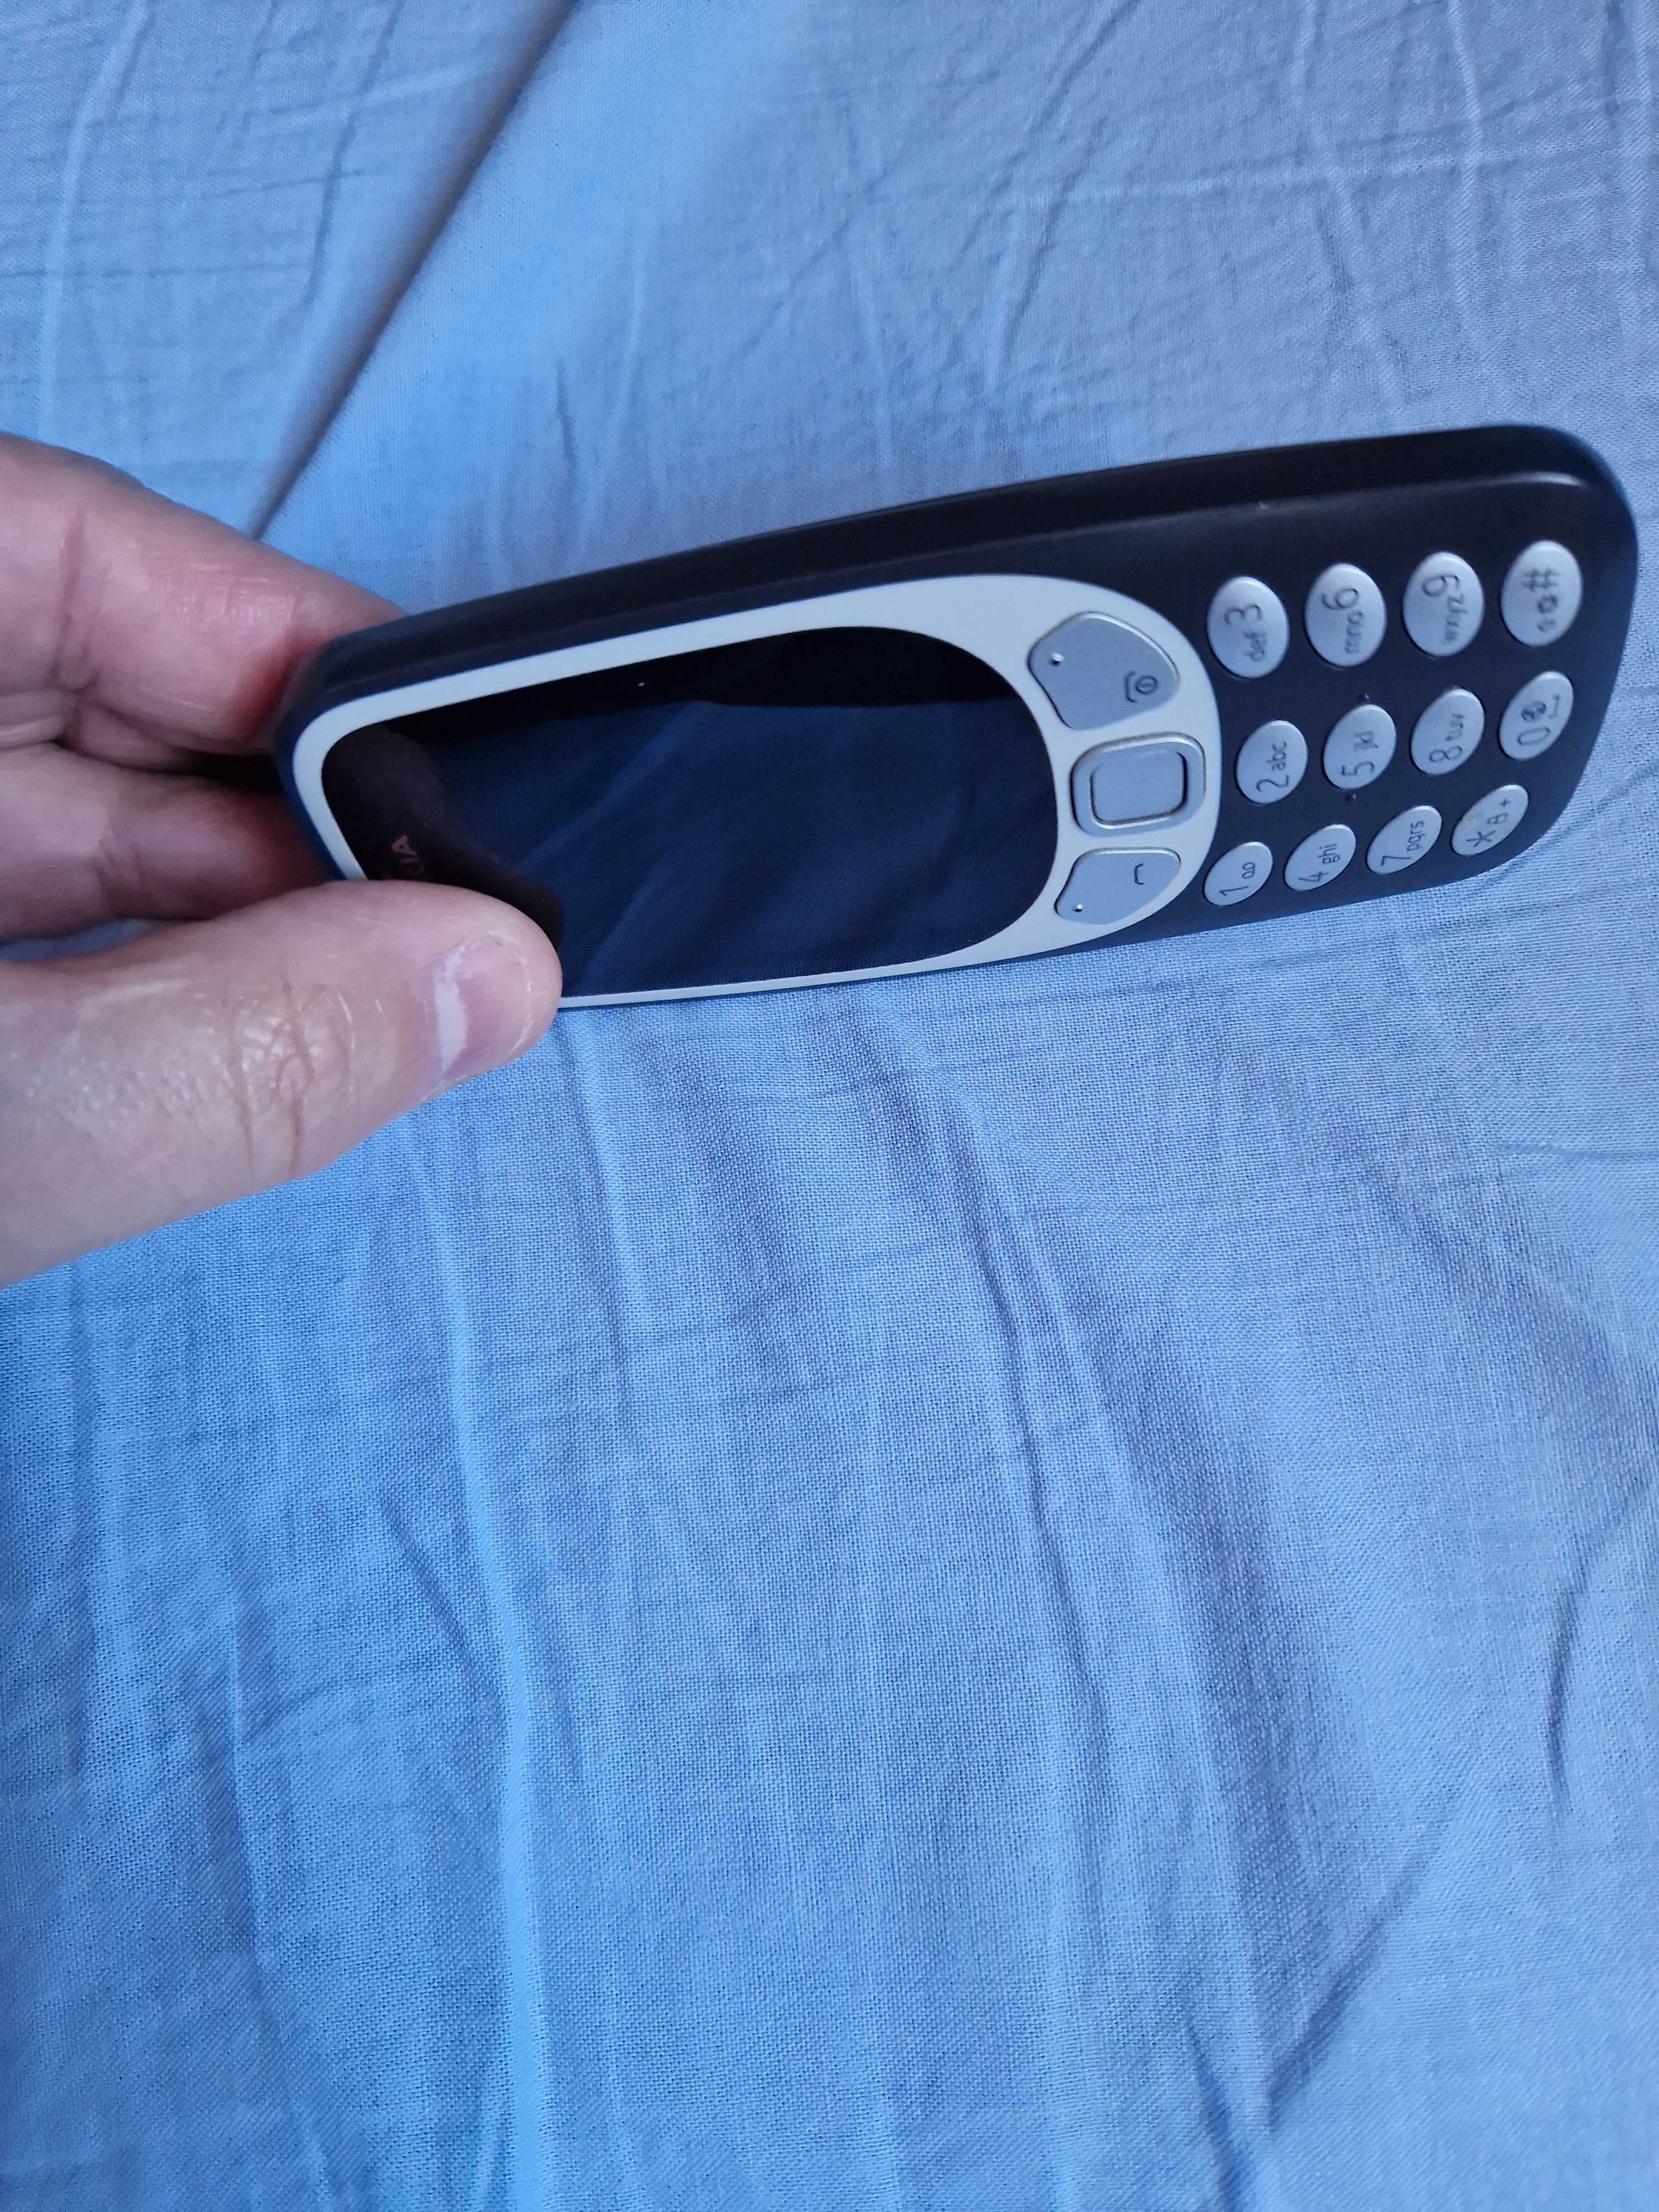 Vand Nokia 3310i Dark Blue Dual Sim.